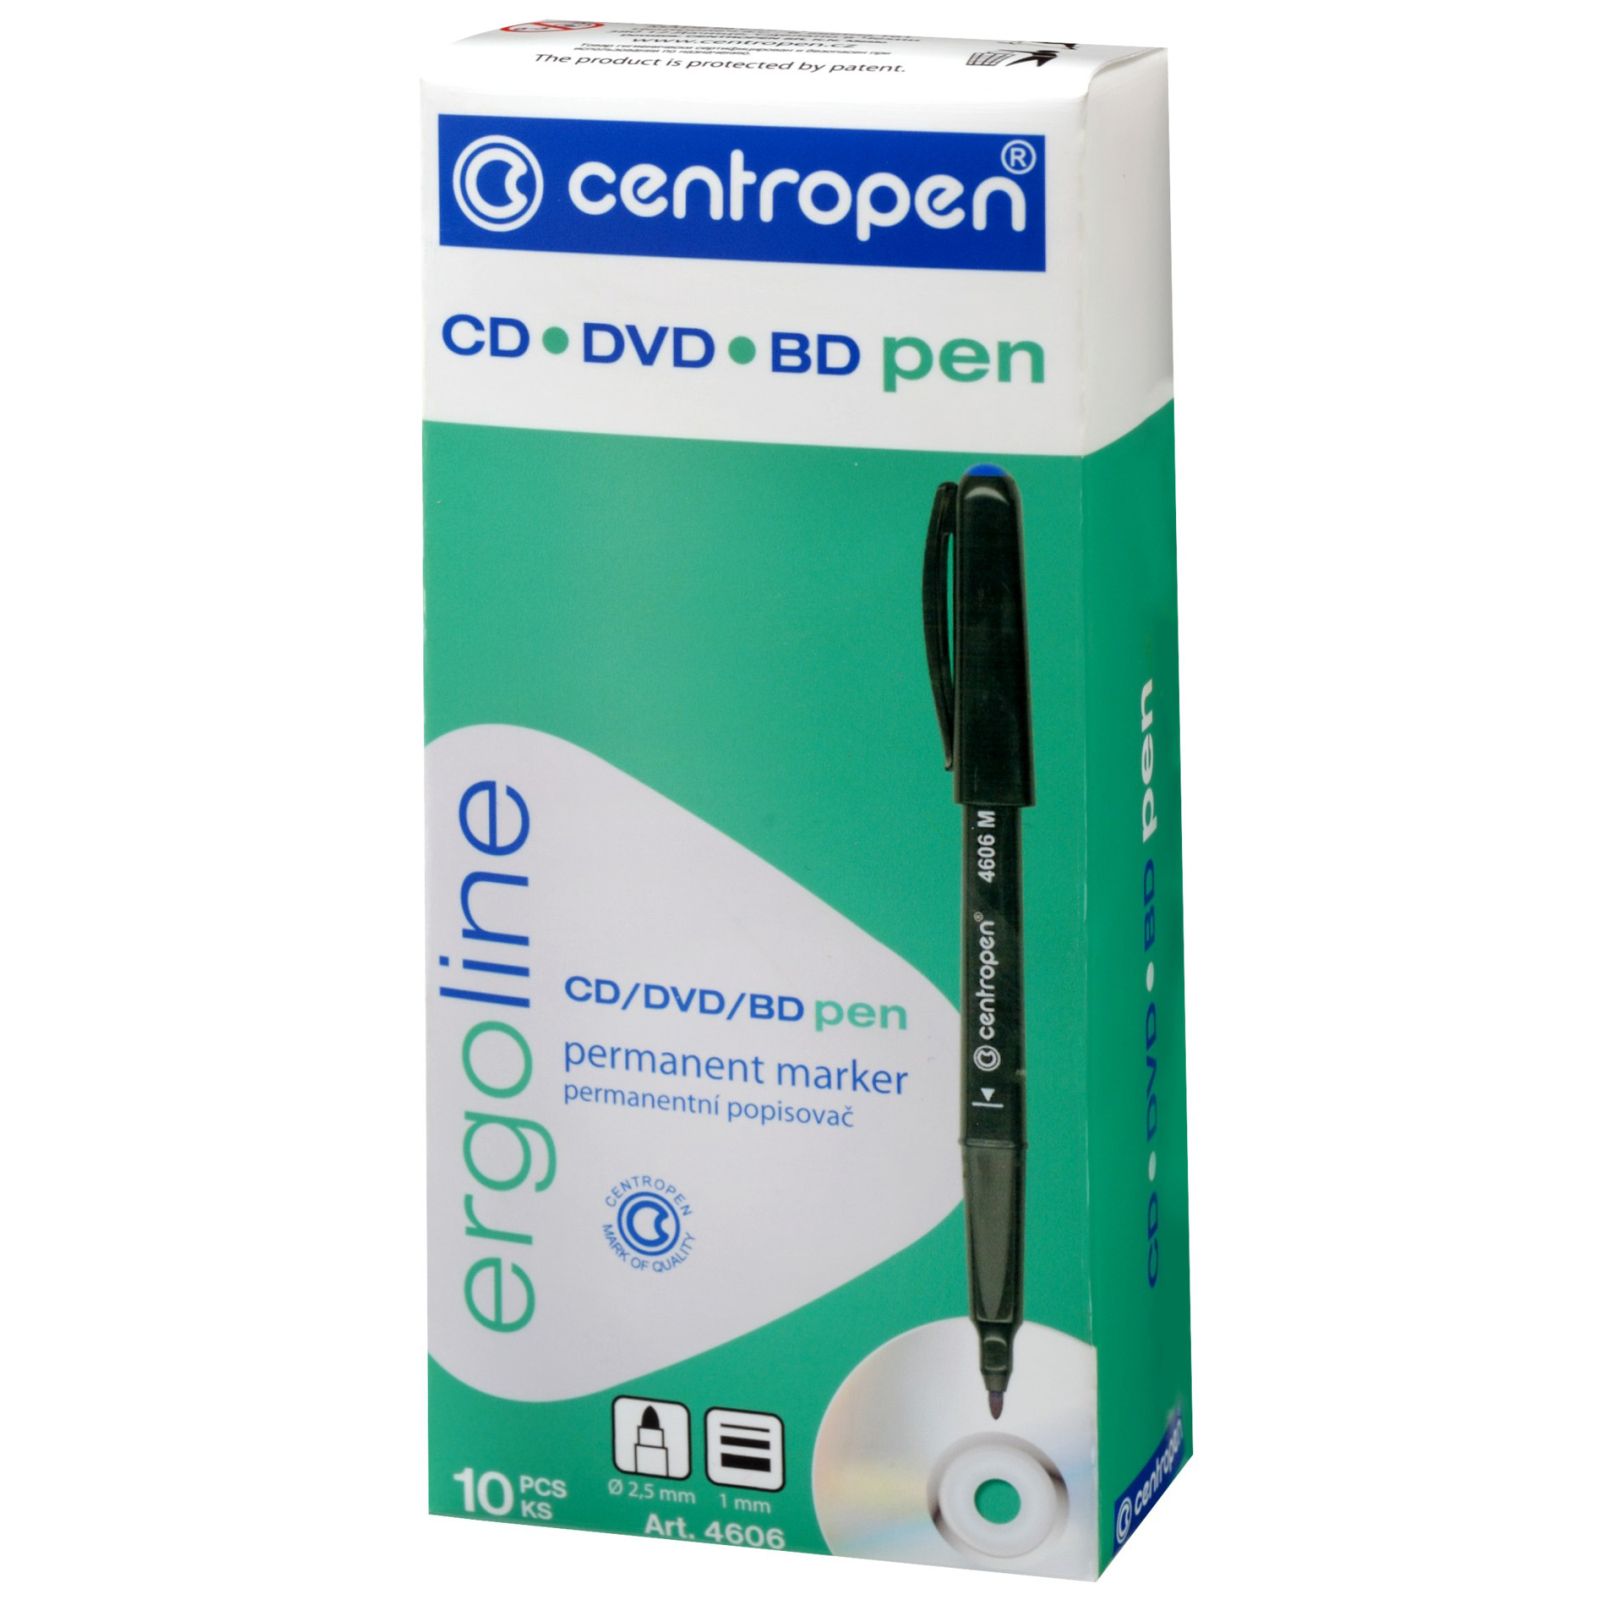 Маркер Centropen CD-Pen 4606 ergoline, 1 мм blue (4606/03) изображение 2